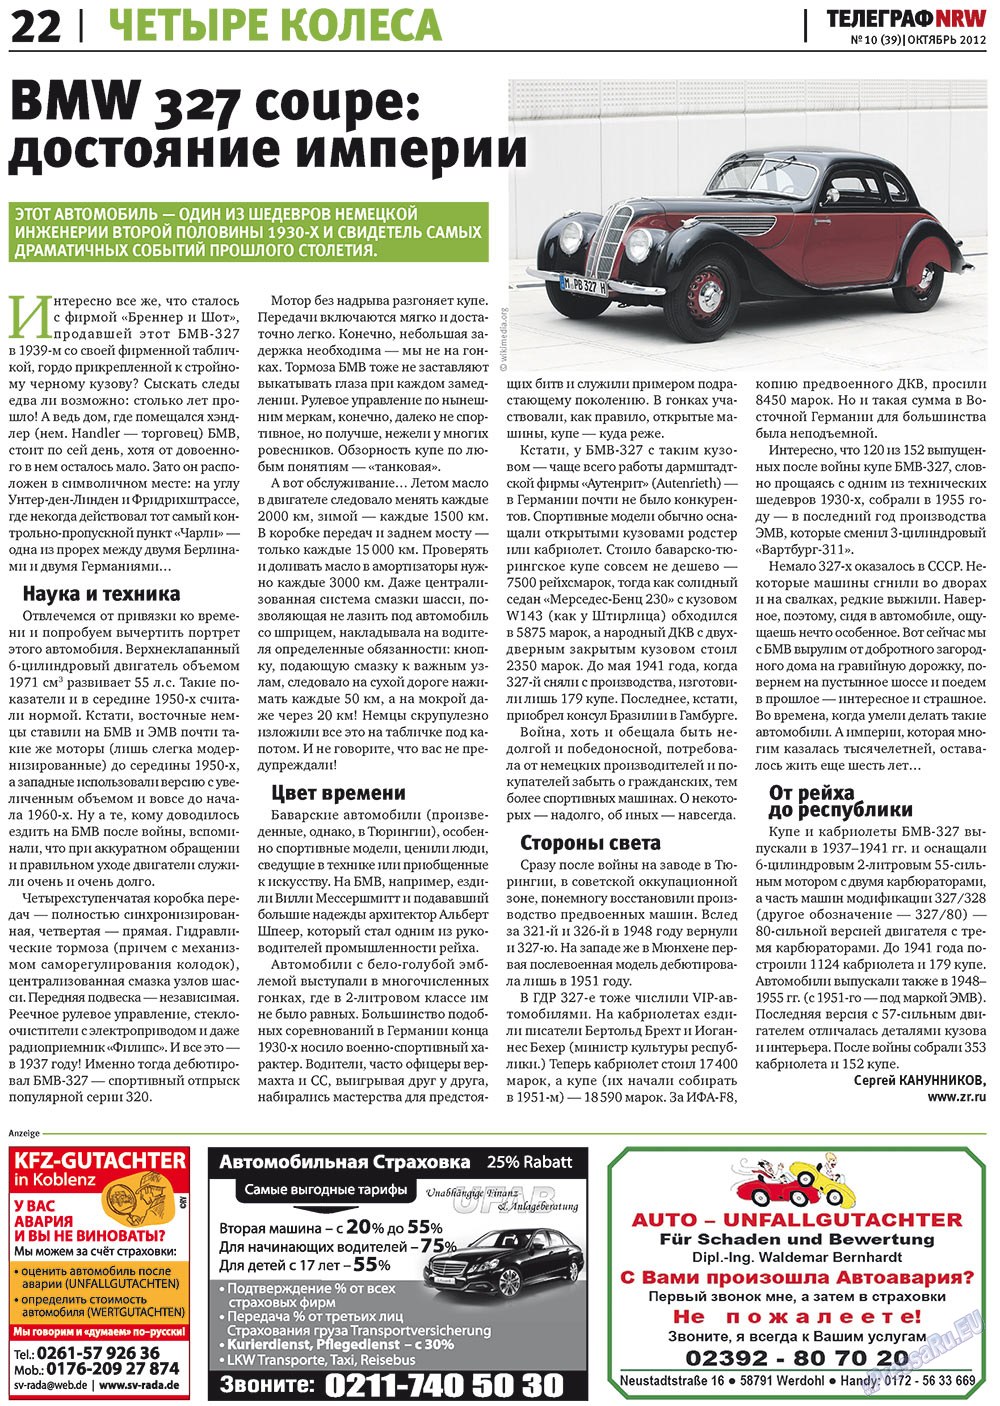 Телеграф NRW (газета). 2012 год, номер 10, стр. 22